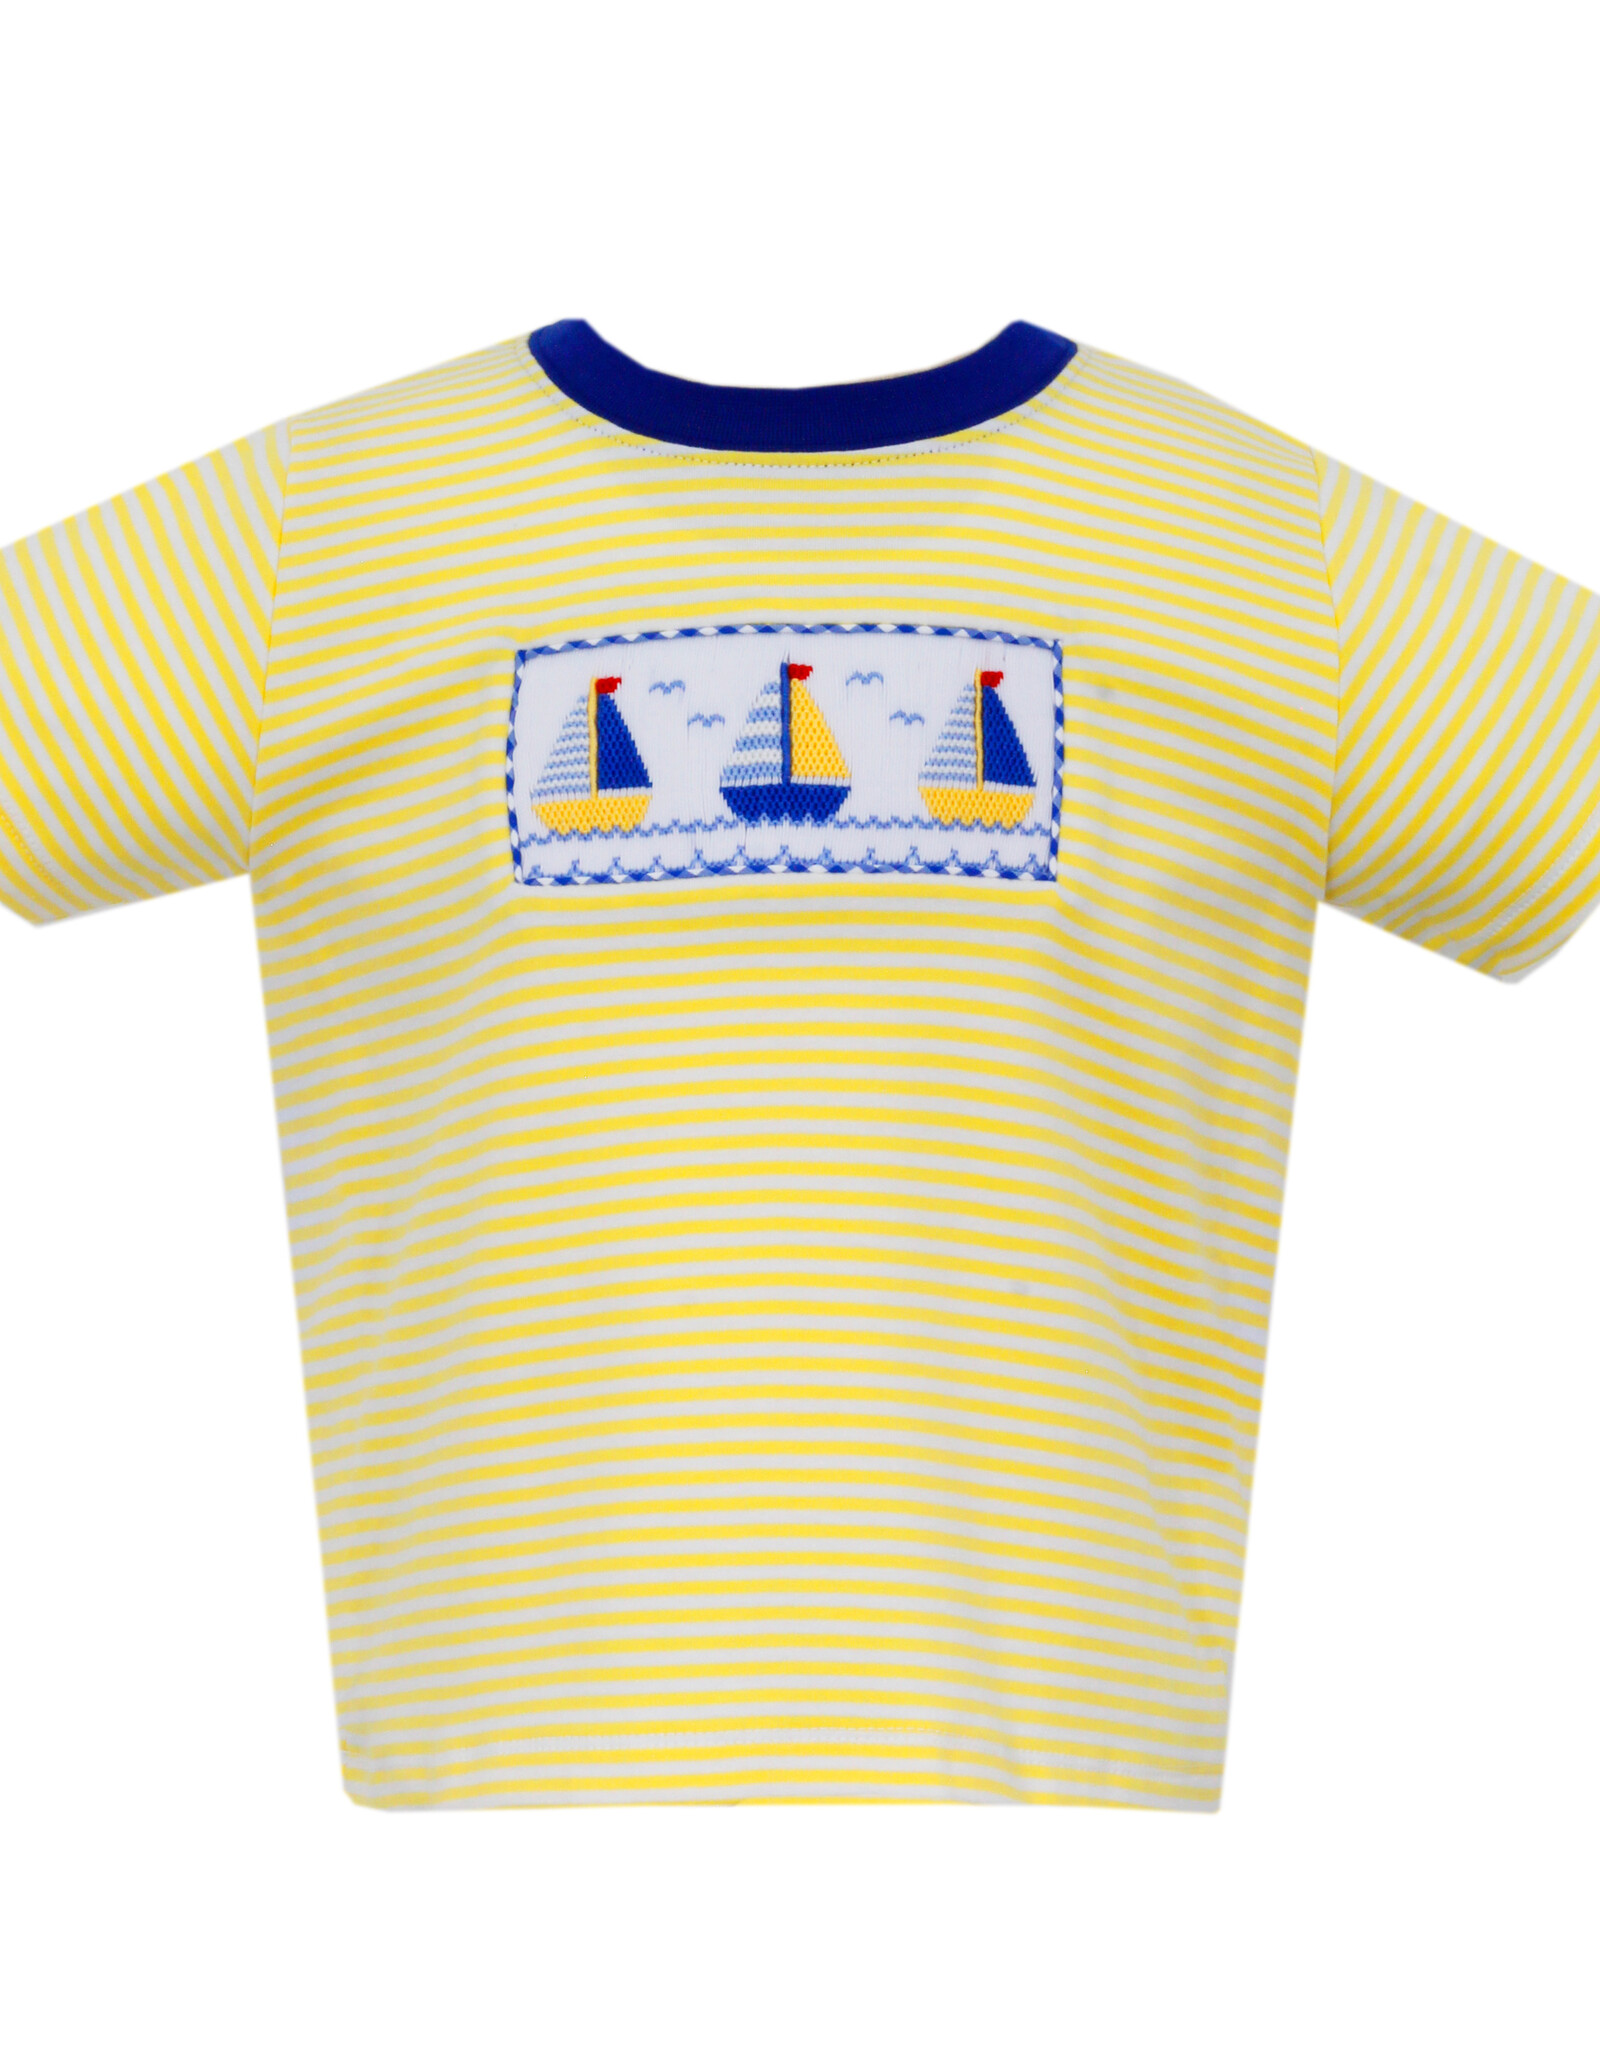 Anavini Sailboat Boy's T-shirt